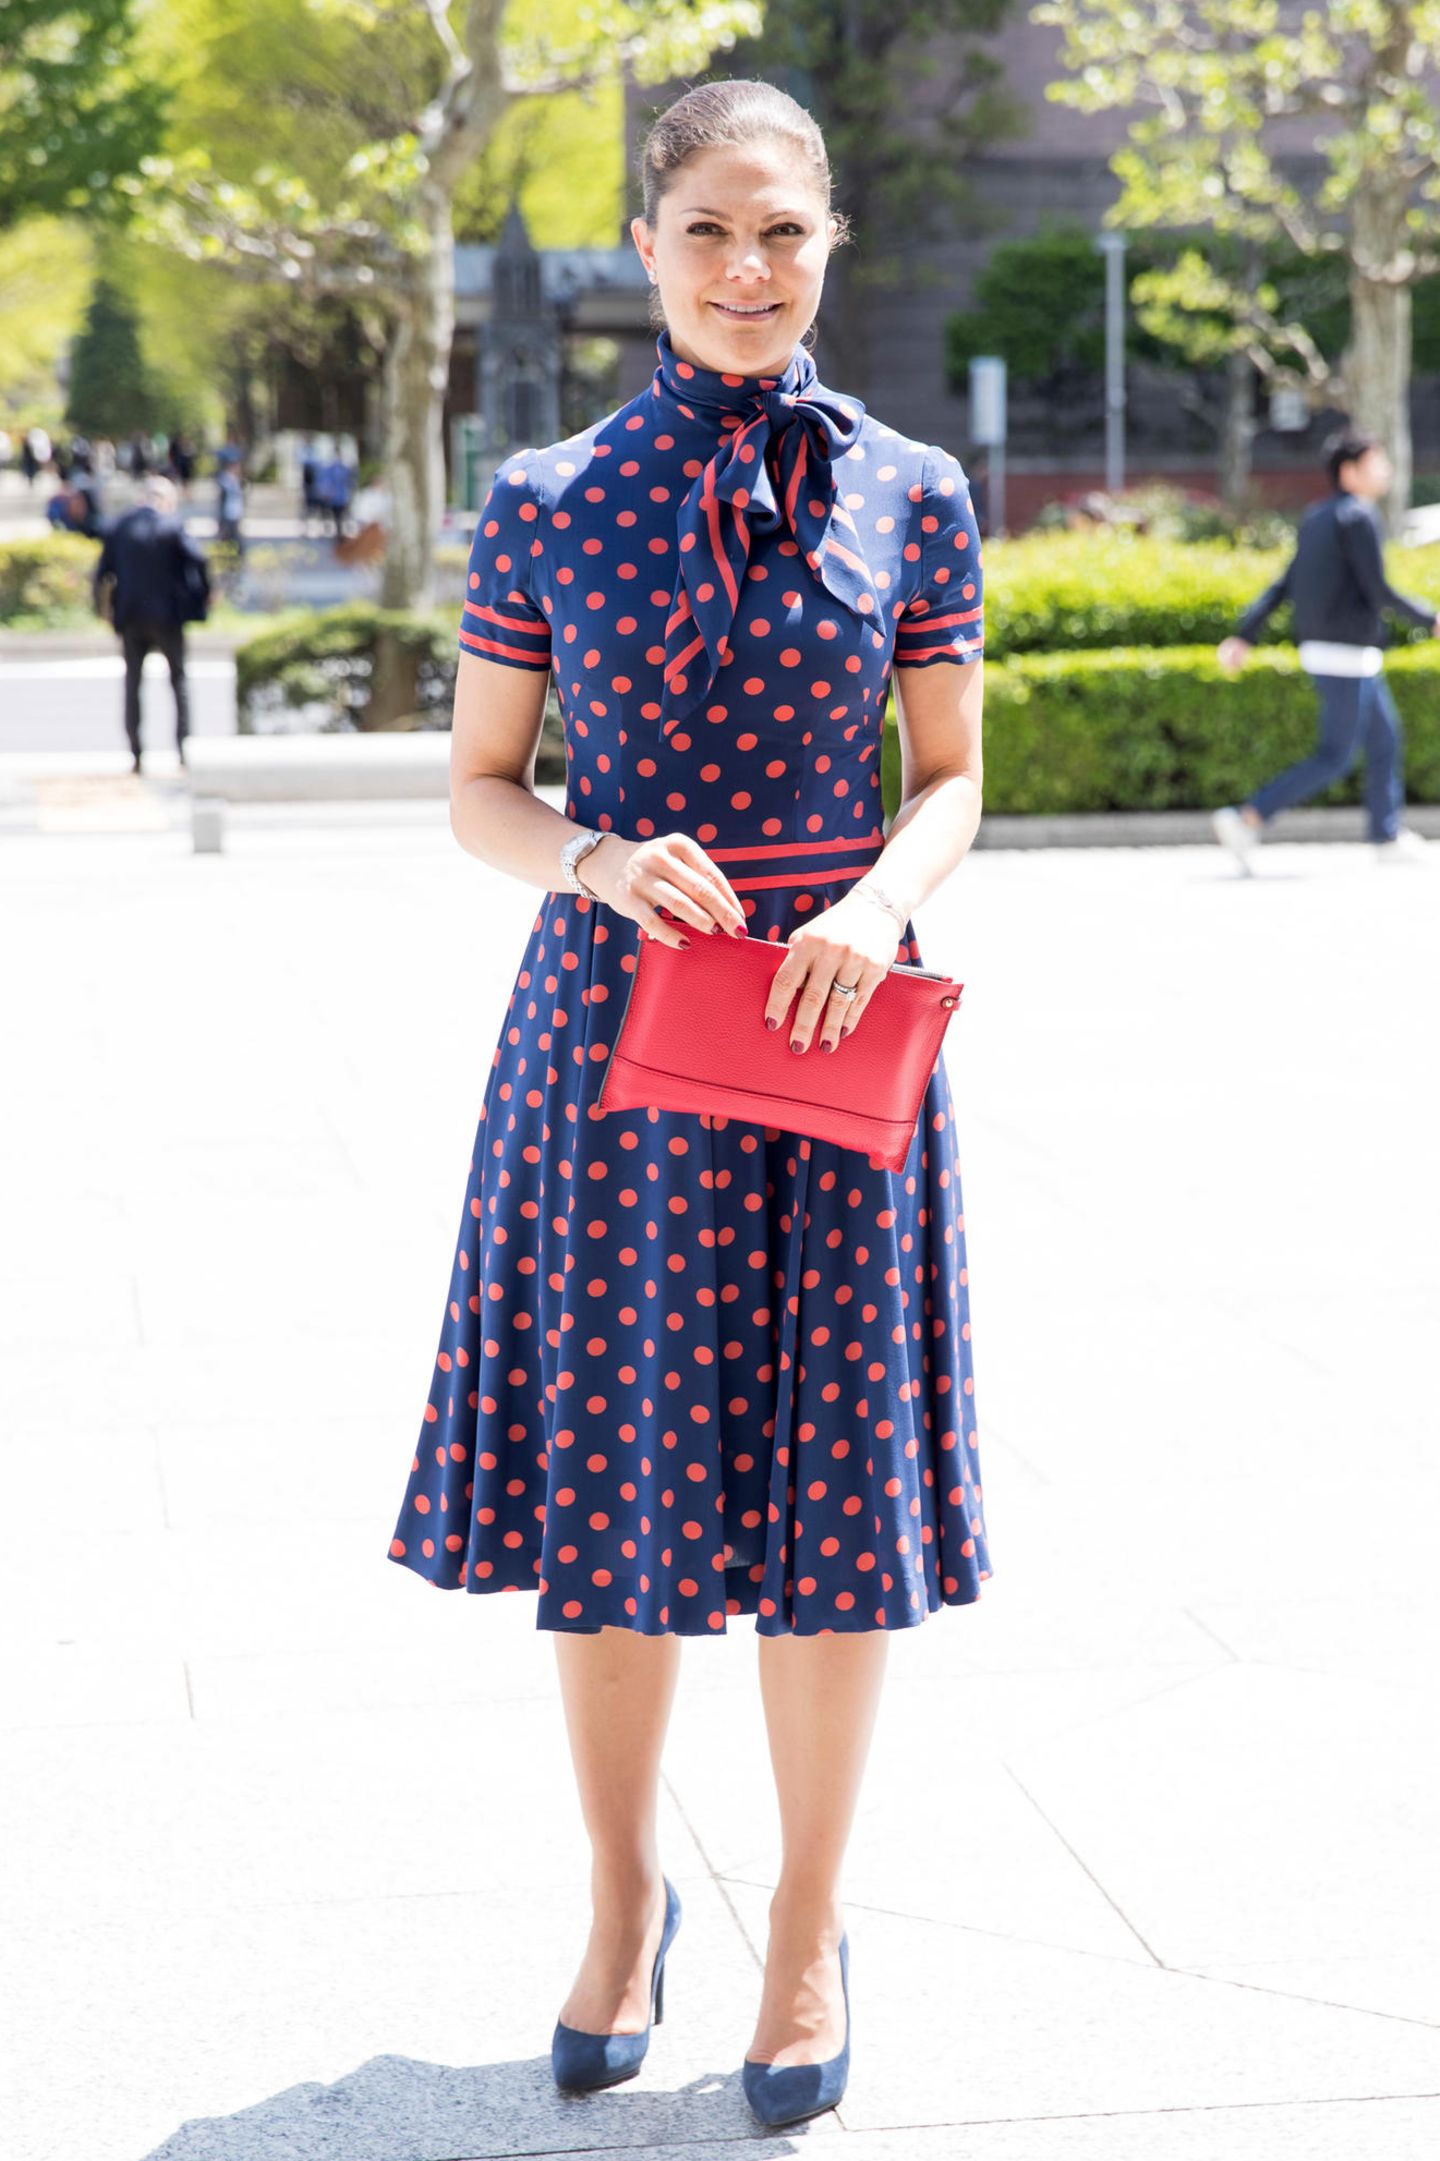 Prinzessin Victoria bezaubert bei ihrem Besuch in Tokio nicht nur die Japaner im Pünktchen-Dress, sondern auch uns. Sehr sogar! Der Rerto-Look ist sogar echt. Das Kleid hat nämlich ihre Mutter, Königin Silvia vor vielen Jahren auch schon getragen.